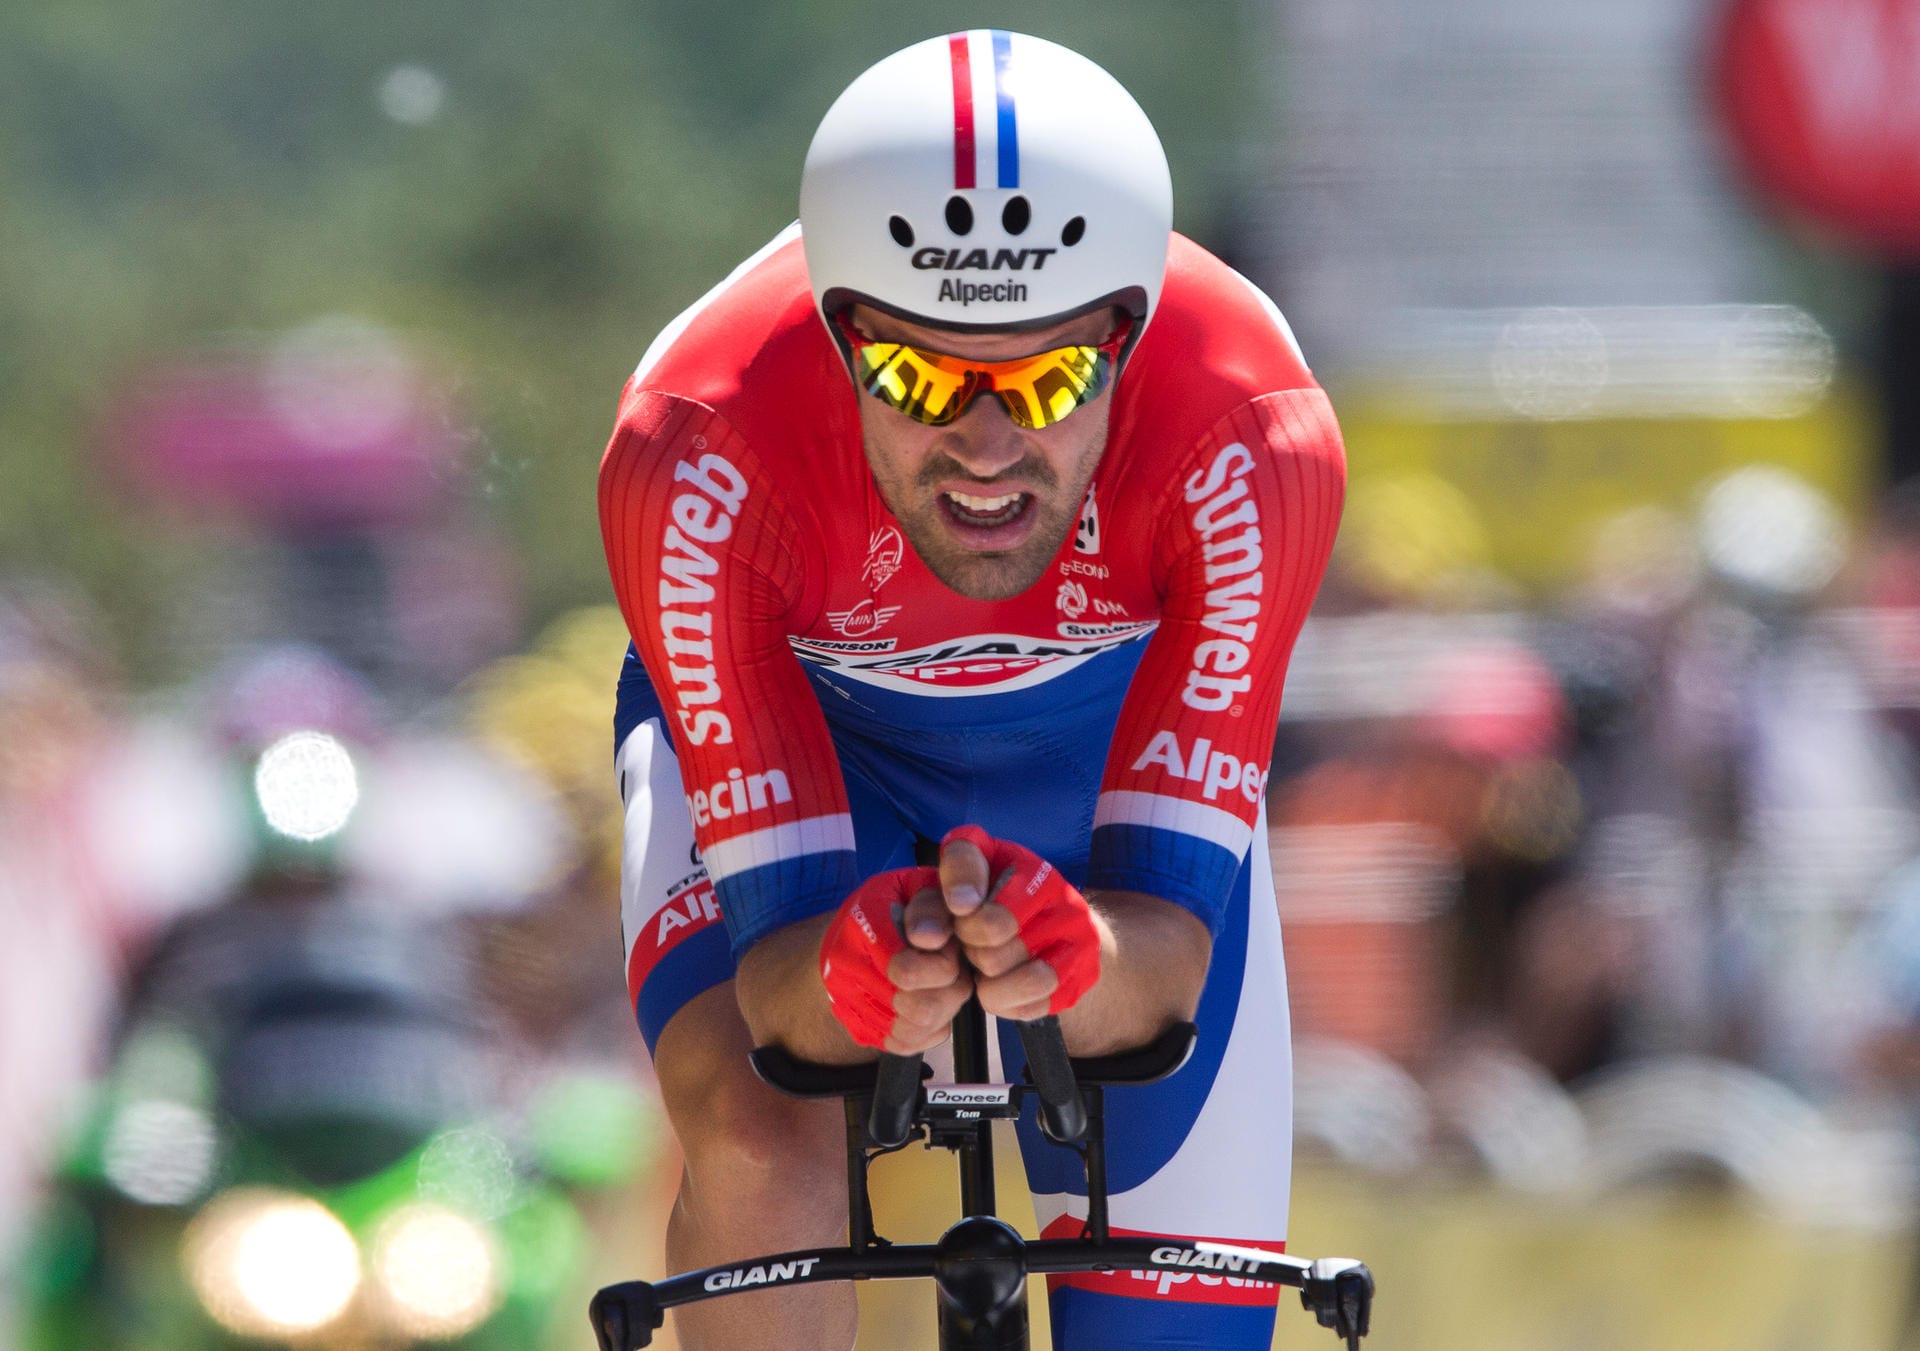 Nicht zu schlagen: Tom Dumoulin war der Schnellste auf dem anspruchsvollen Kurs. Für den Niederländer aus dem deutschen Team Giant-Alpecin war es bereits der zweite Etappensieg bei der Tour 2016.